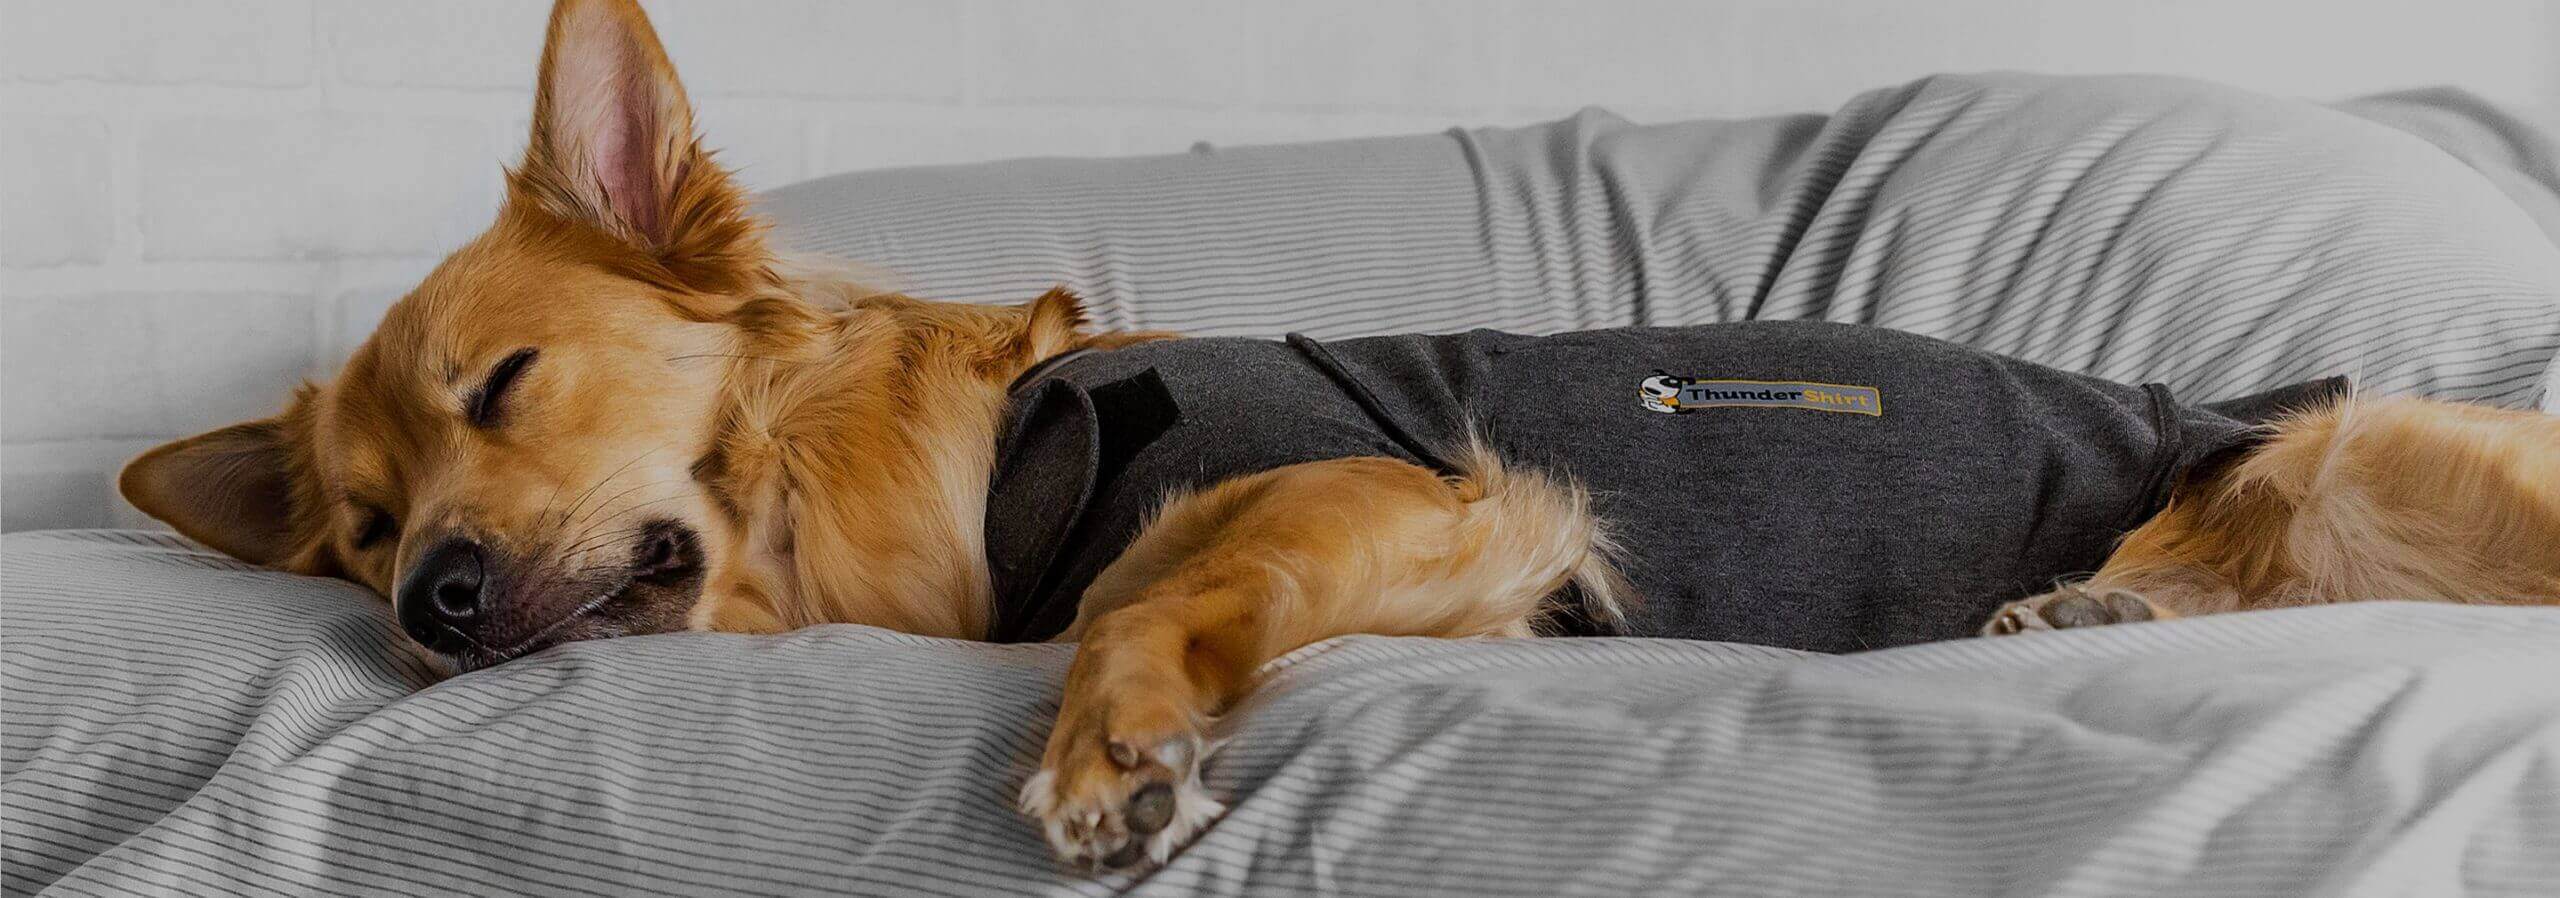 pies spokojnie śpiący w kamizelce relaksującej ThunderShirt